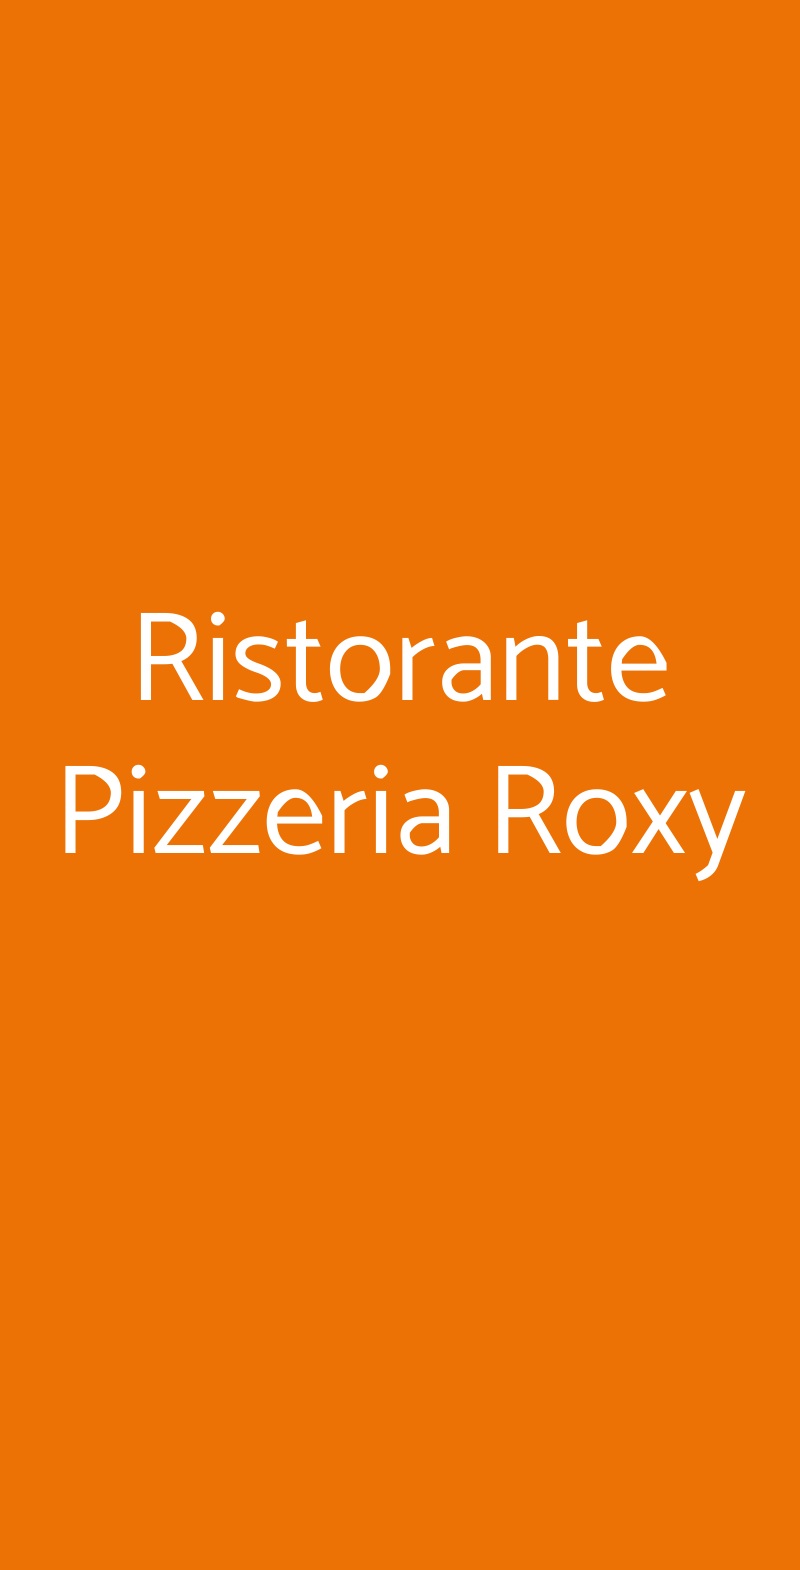 Ristorante Pizzeria Roxy Arcore menù 1 pagina